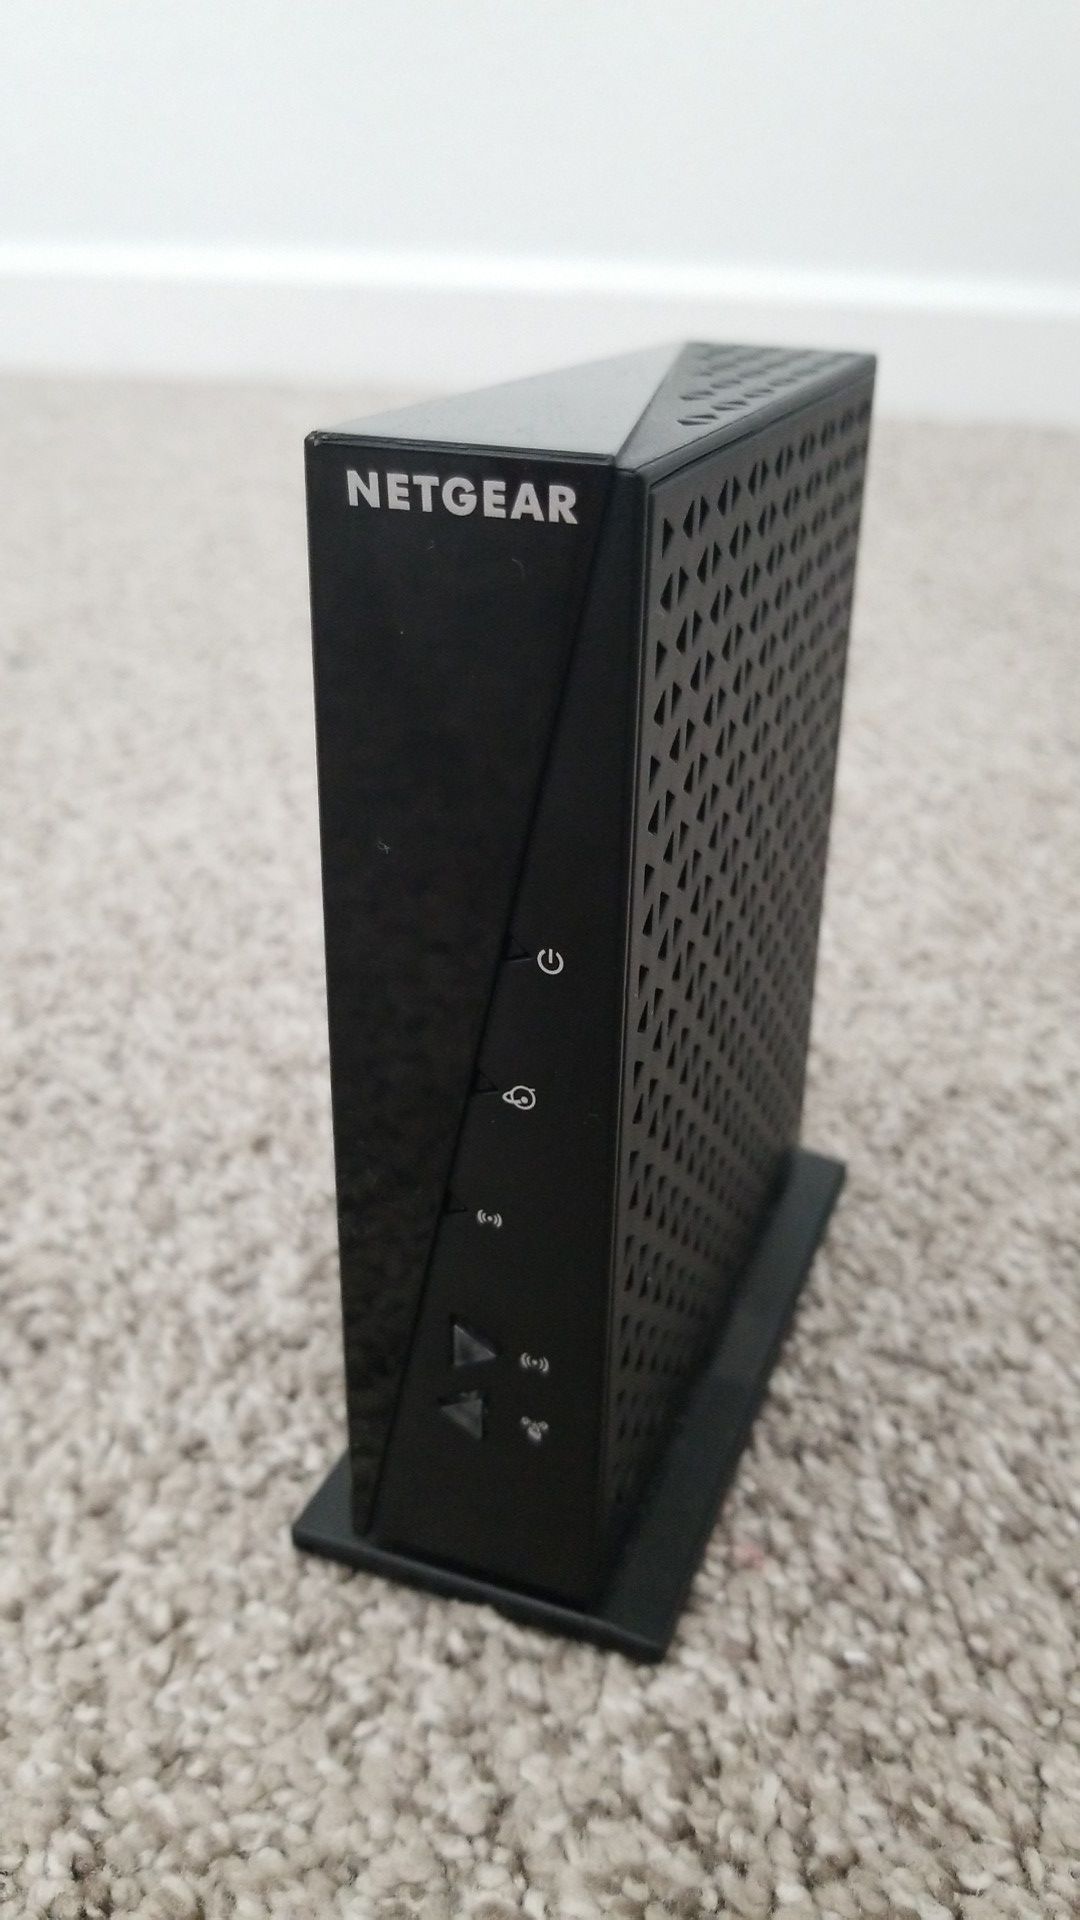 Netgear N300 wifi router